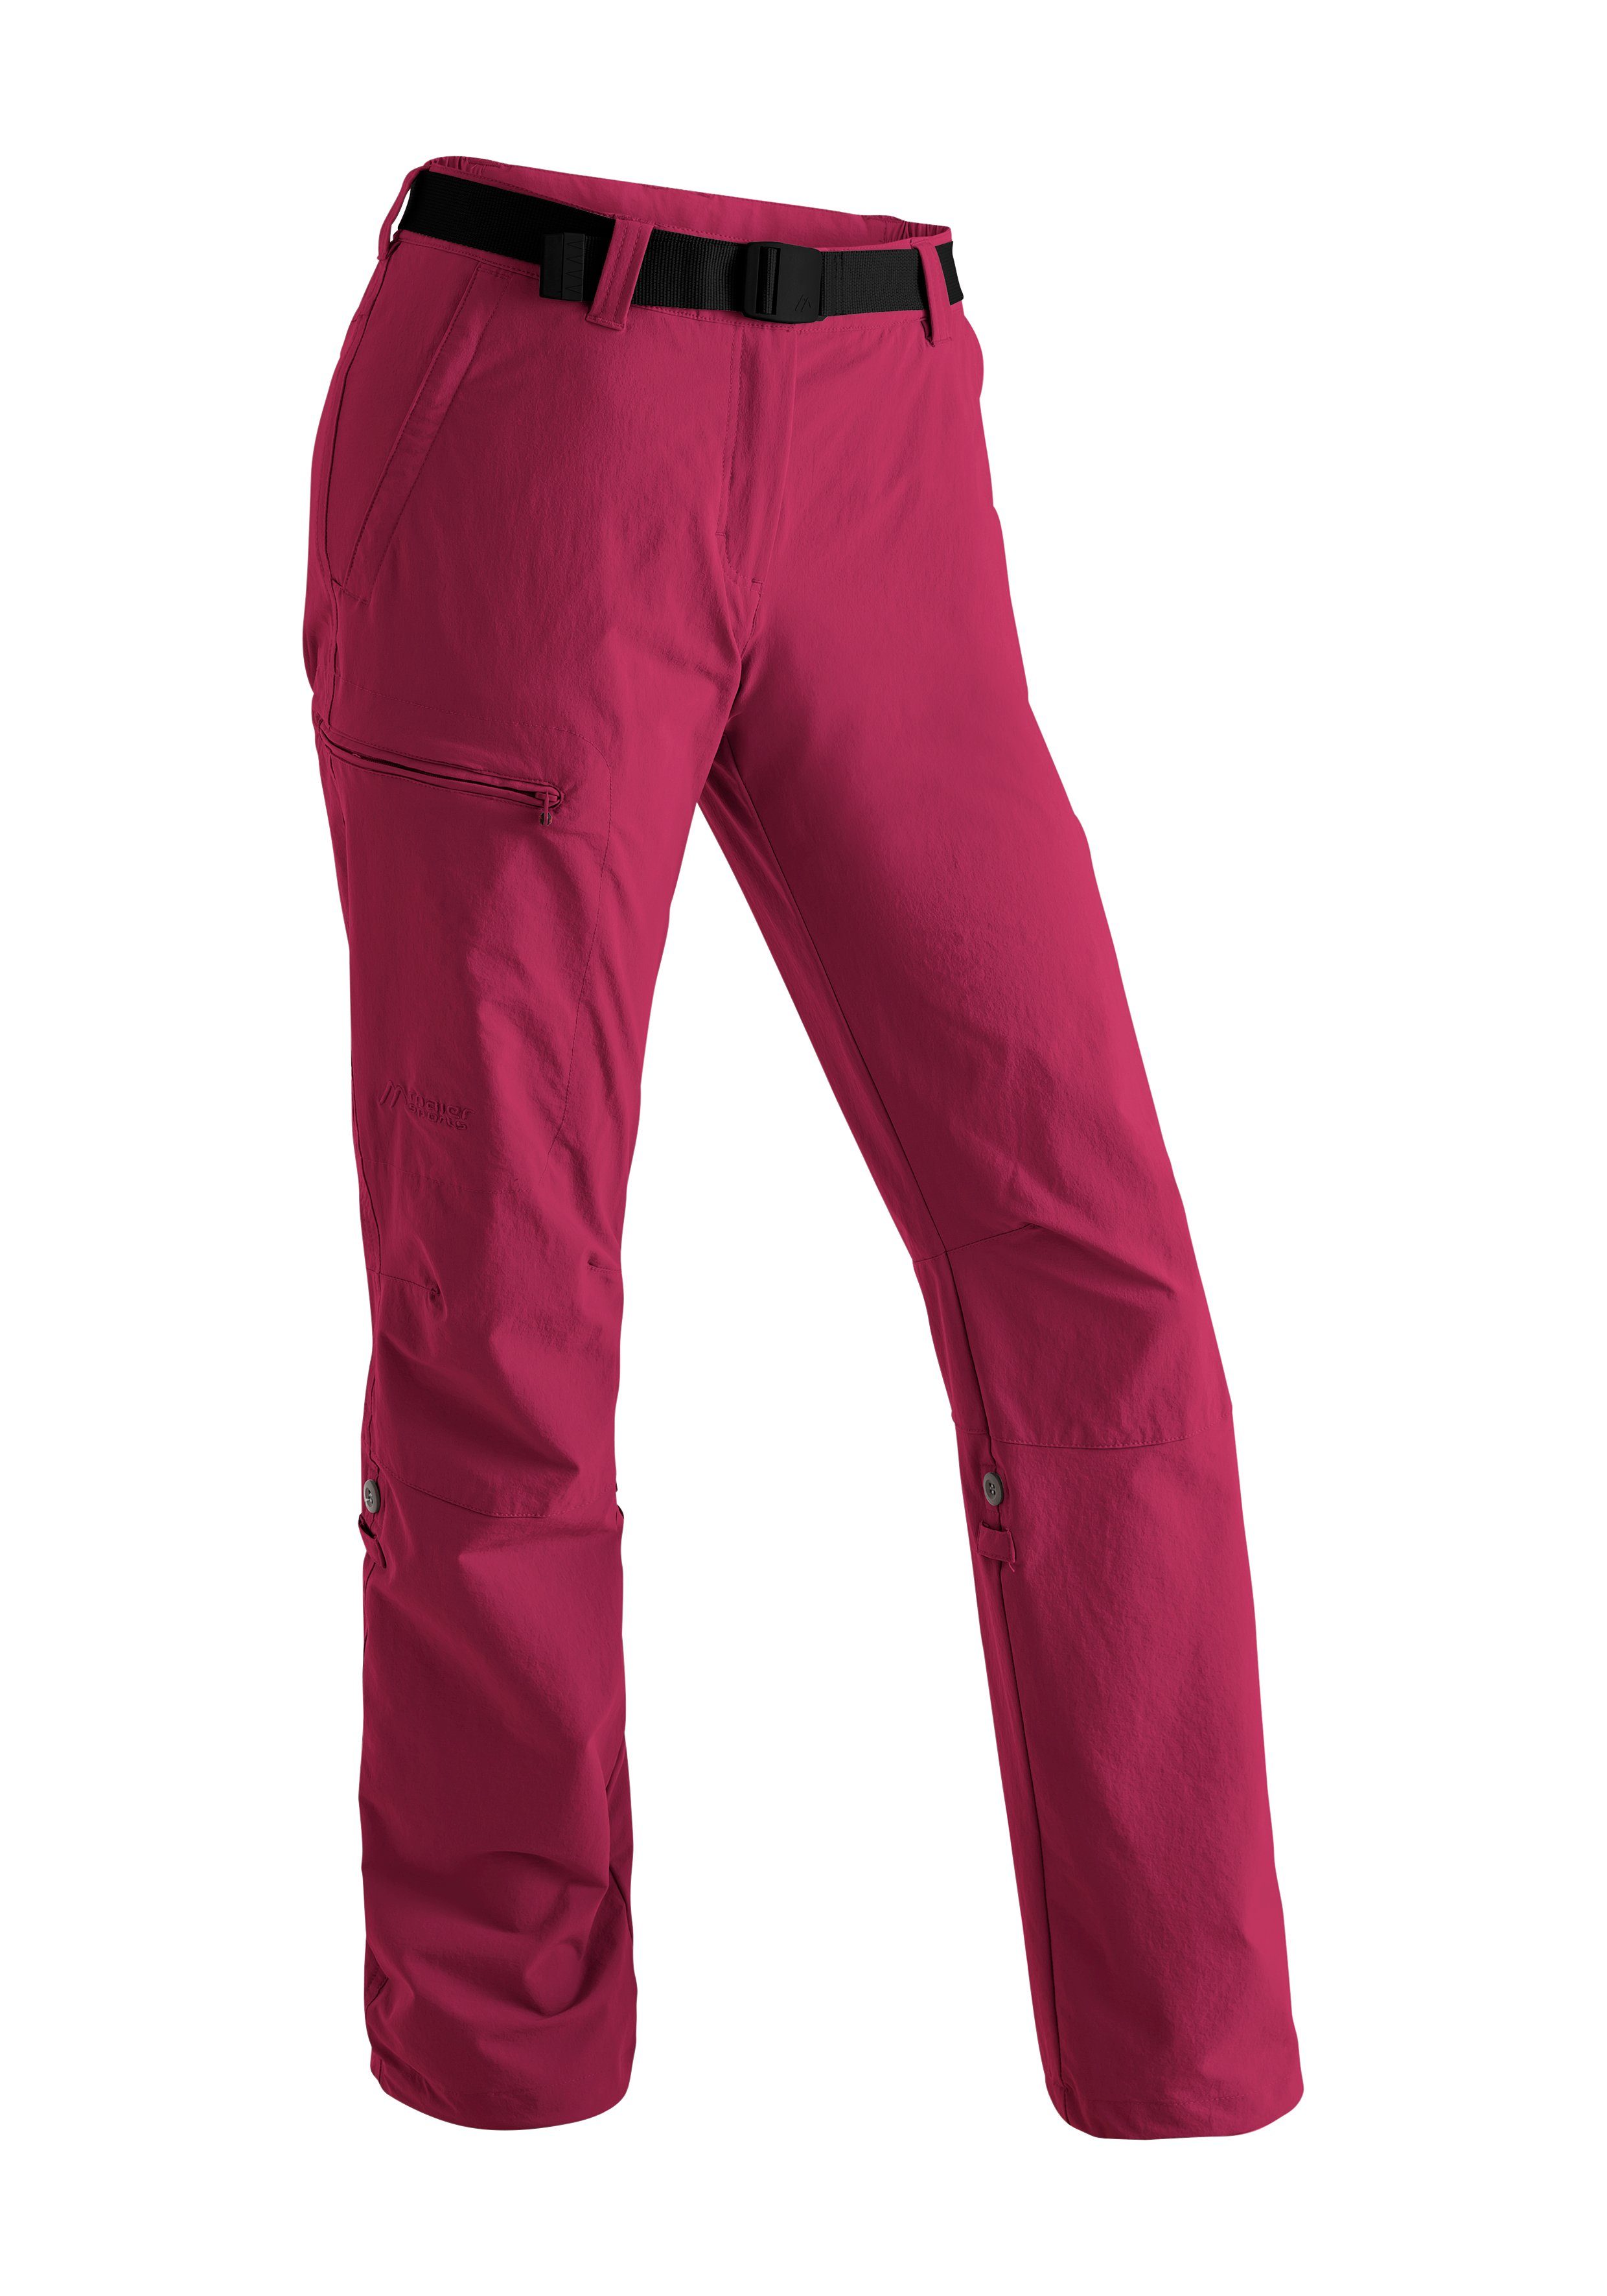 Roll Damen Outdoor-Hose Lulaka purpurrot Funktion up atmungsaktive Wanderhose, mit Funktionshose Maier Sports